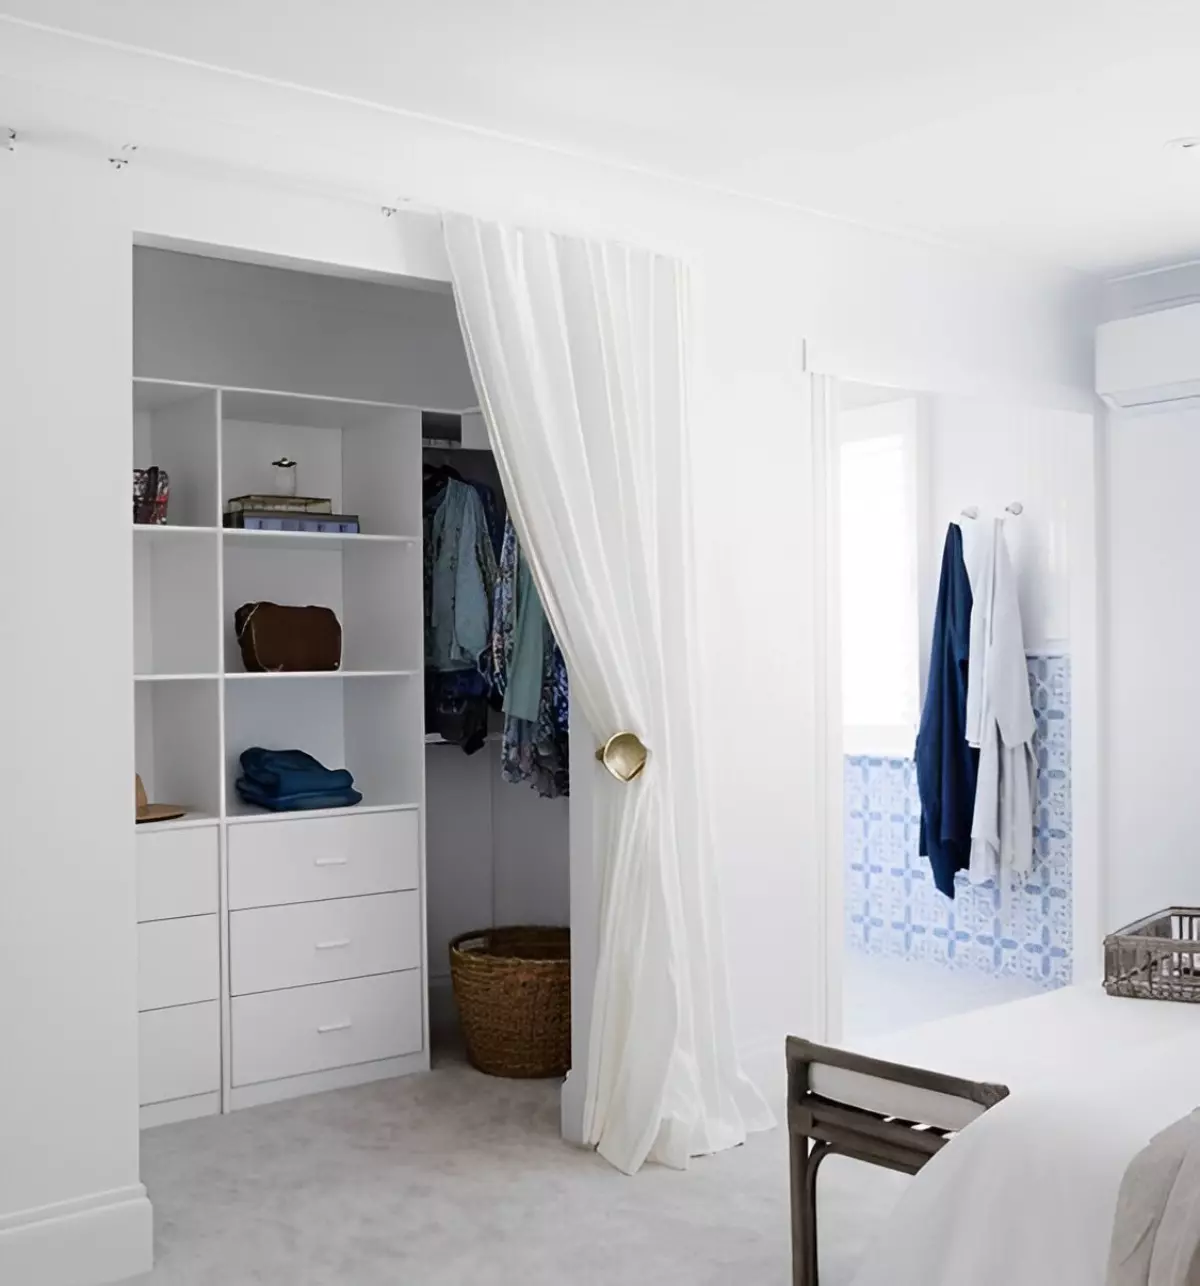 rideau a la place des portes dans un interieur blanc avec des touches de bleu